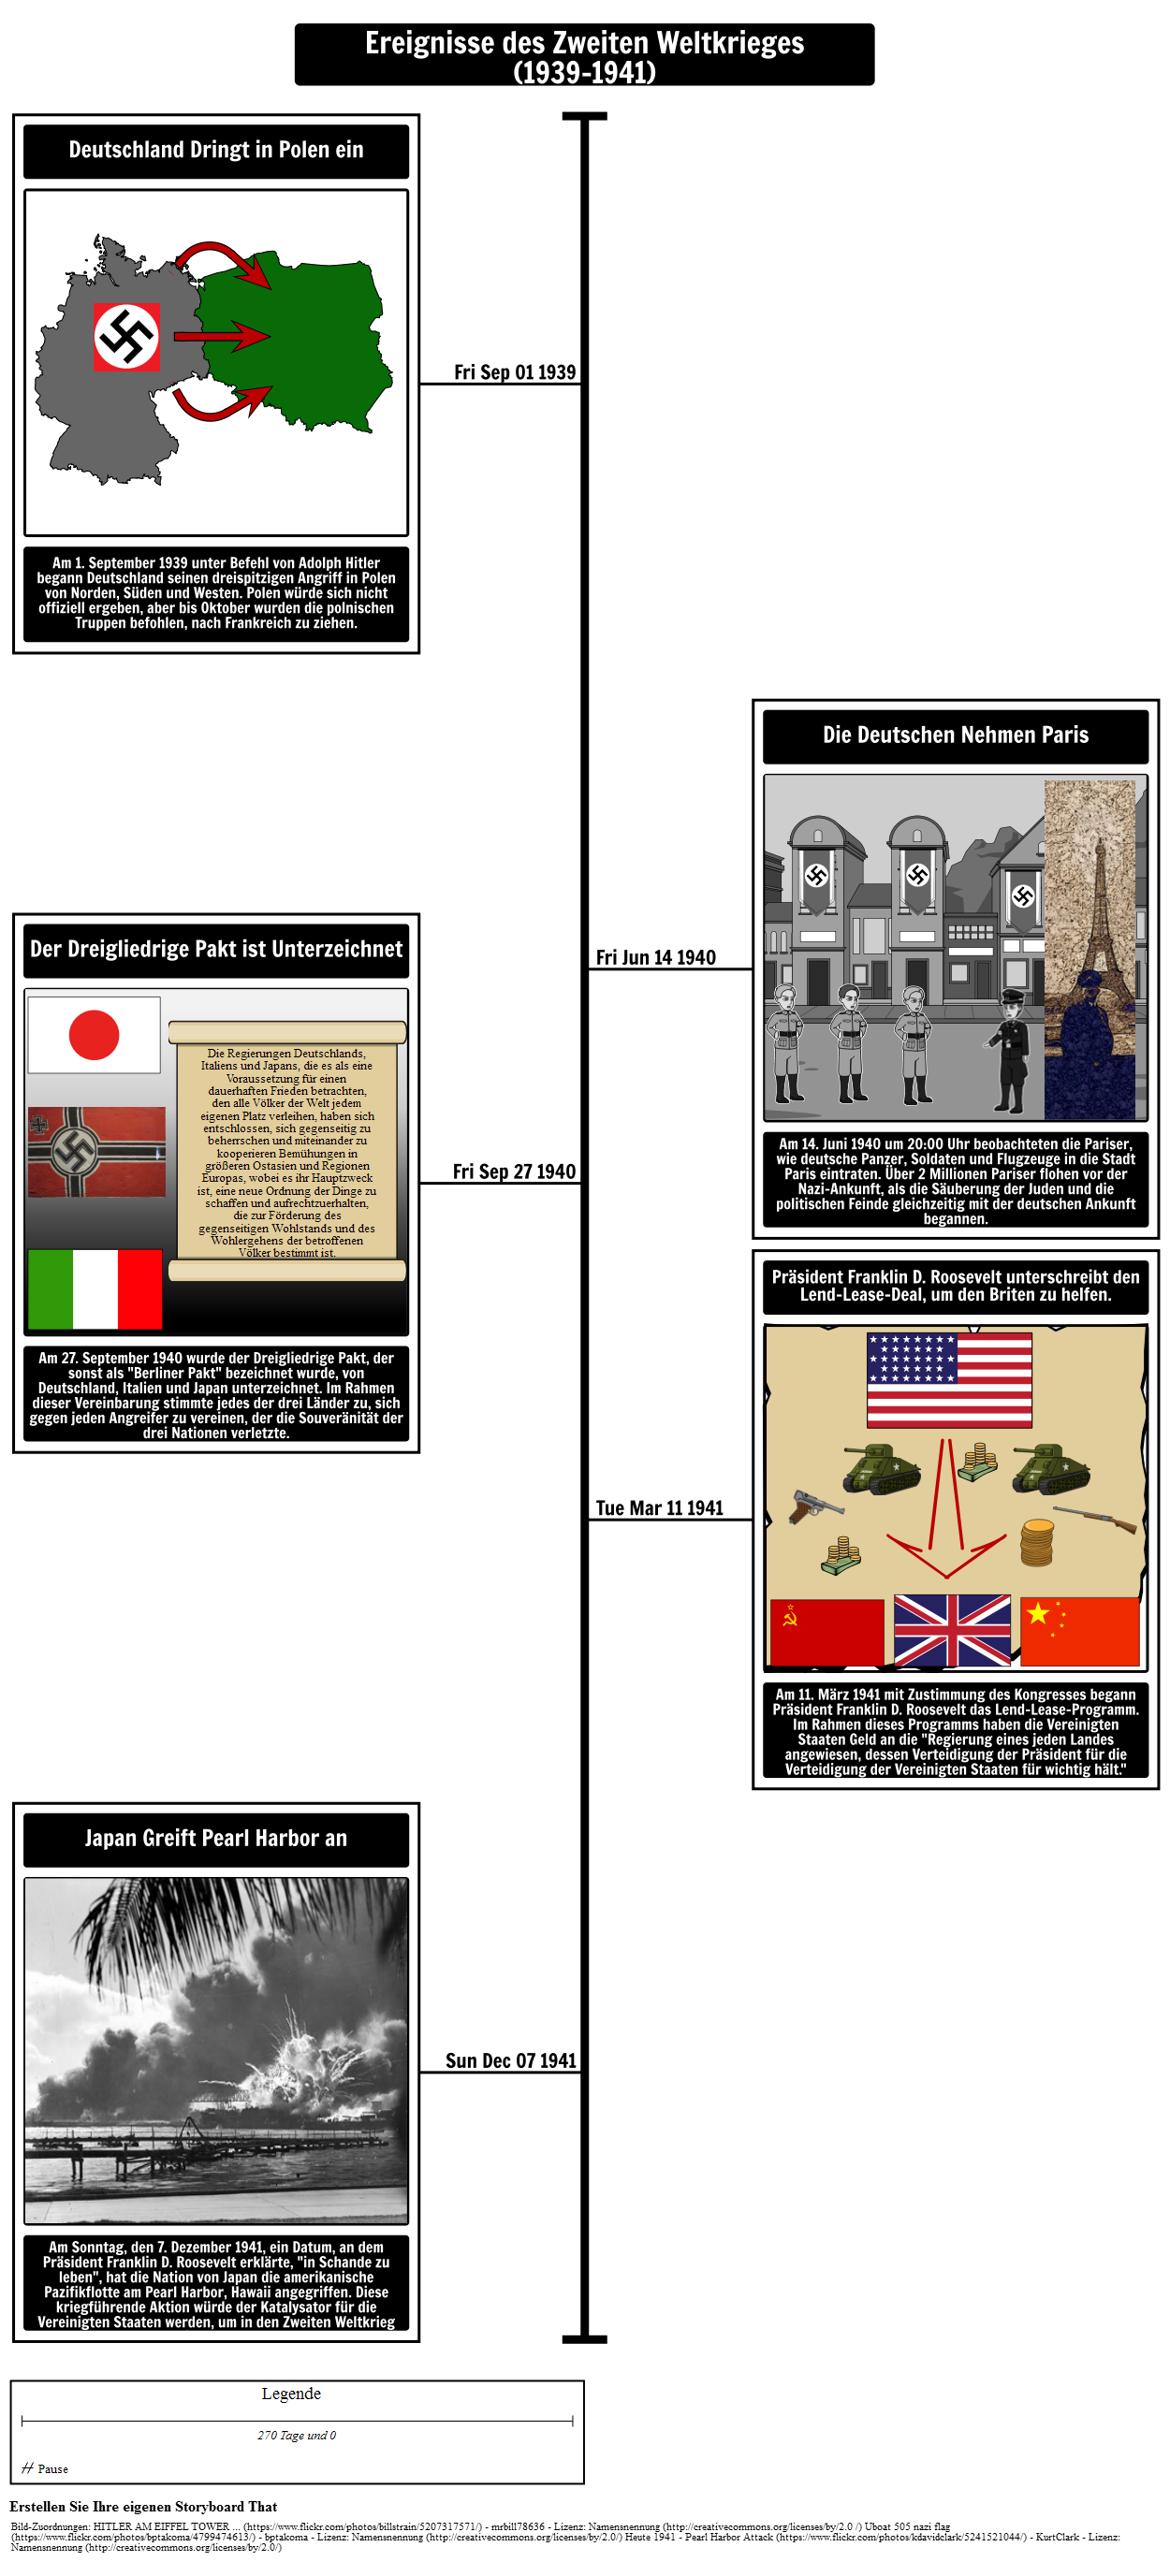 Zweiter Weltkrieg Timeline 1939-1941